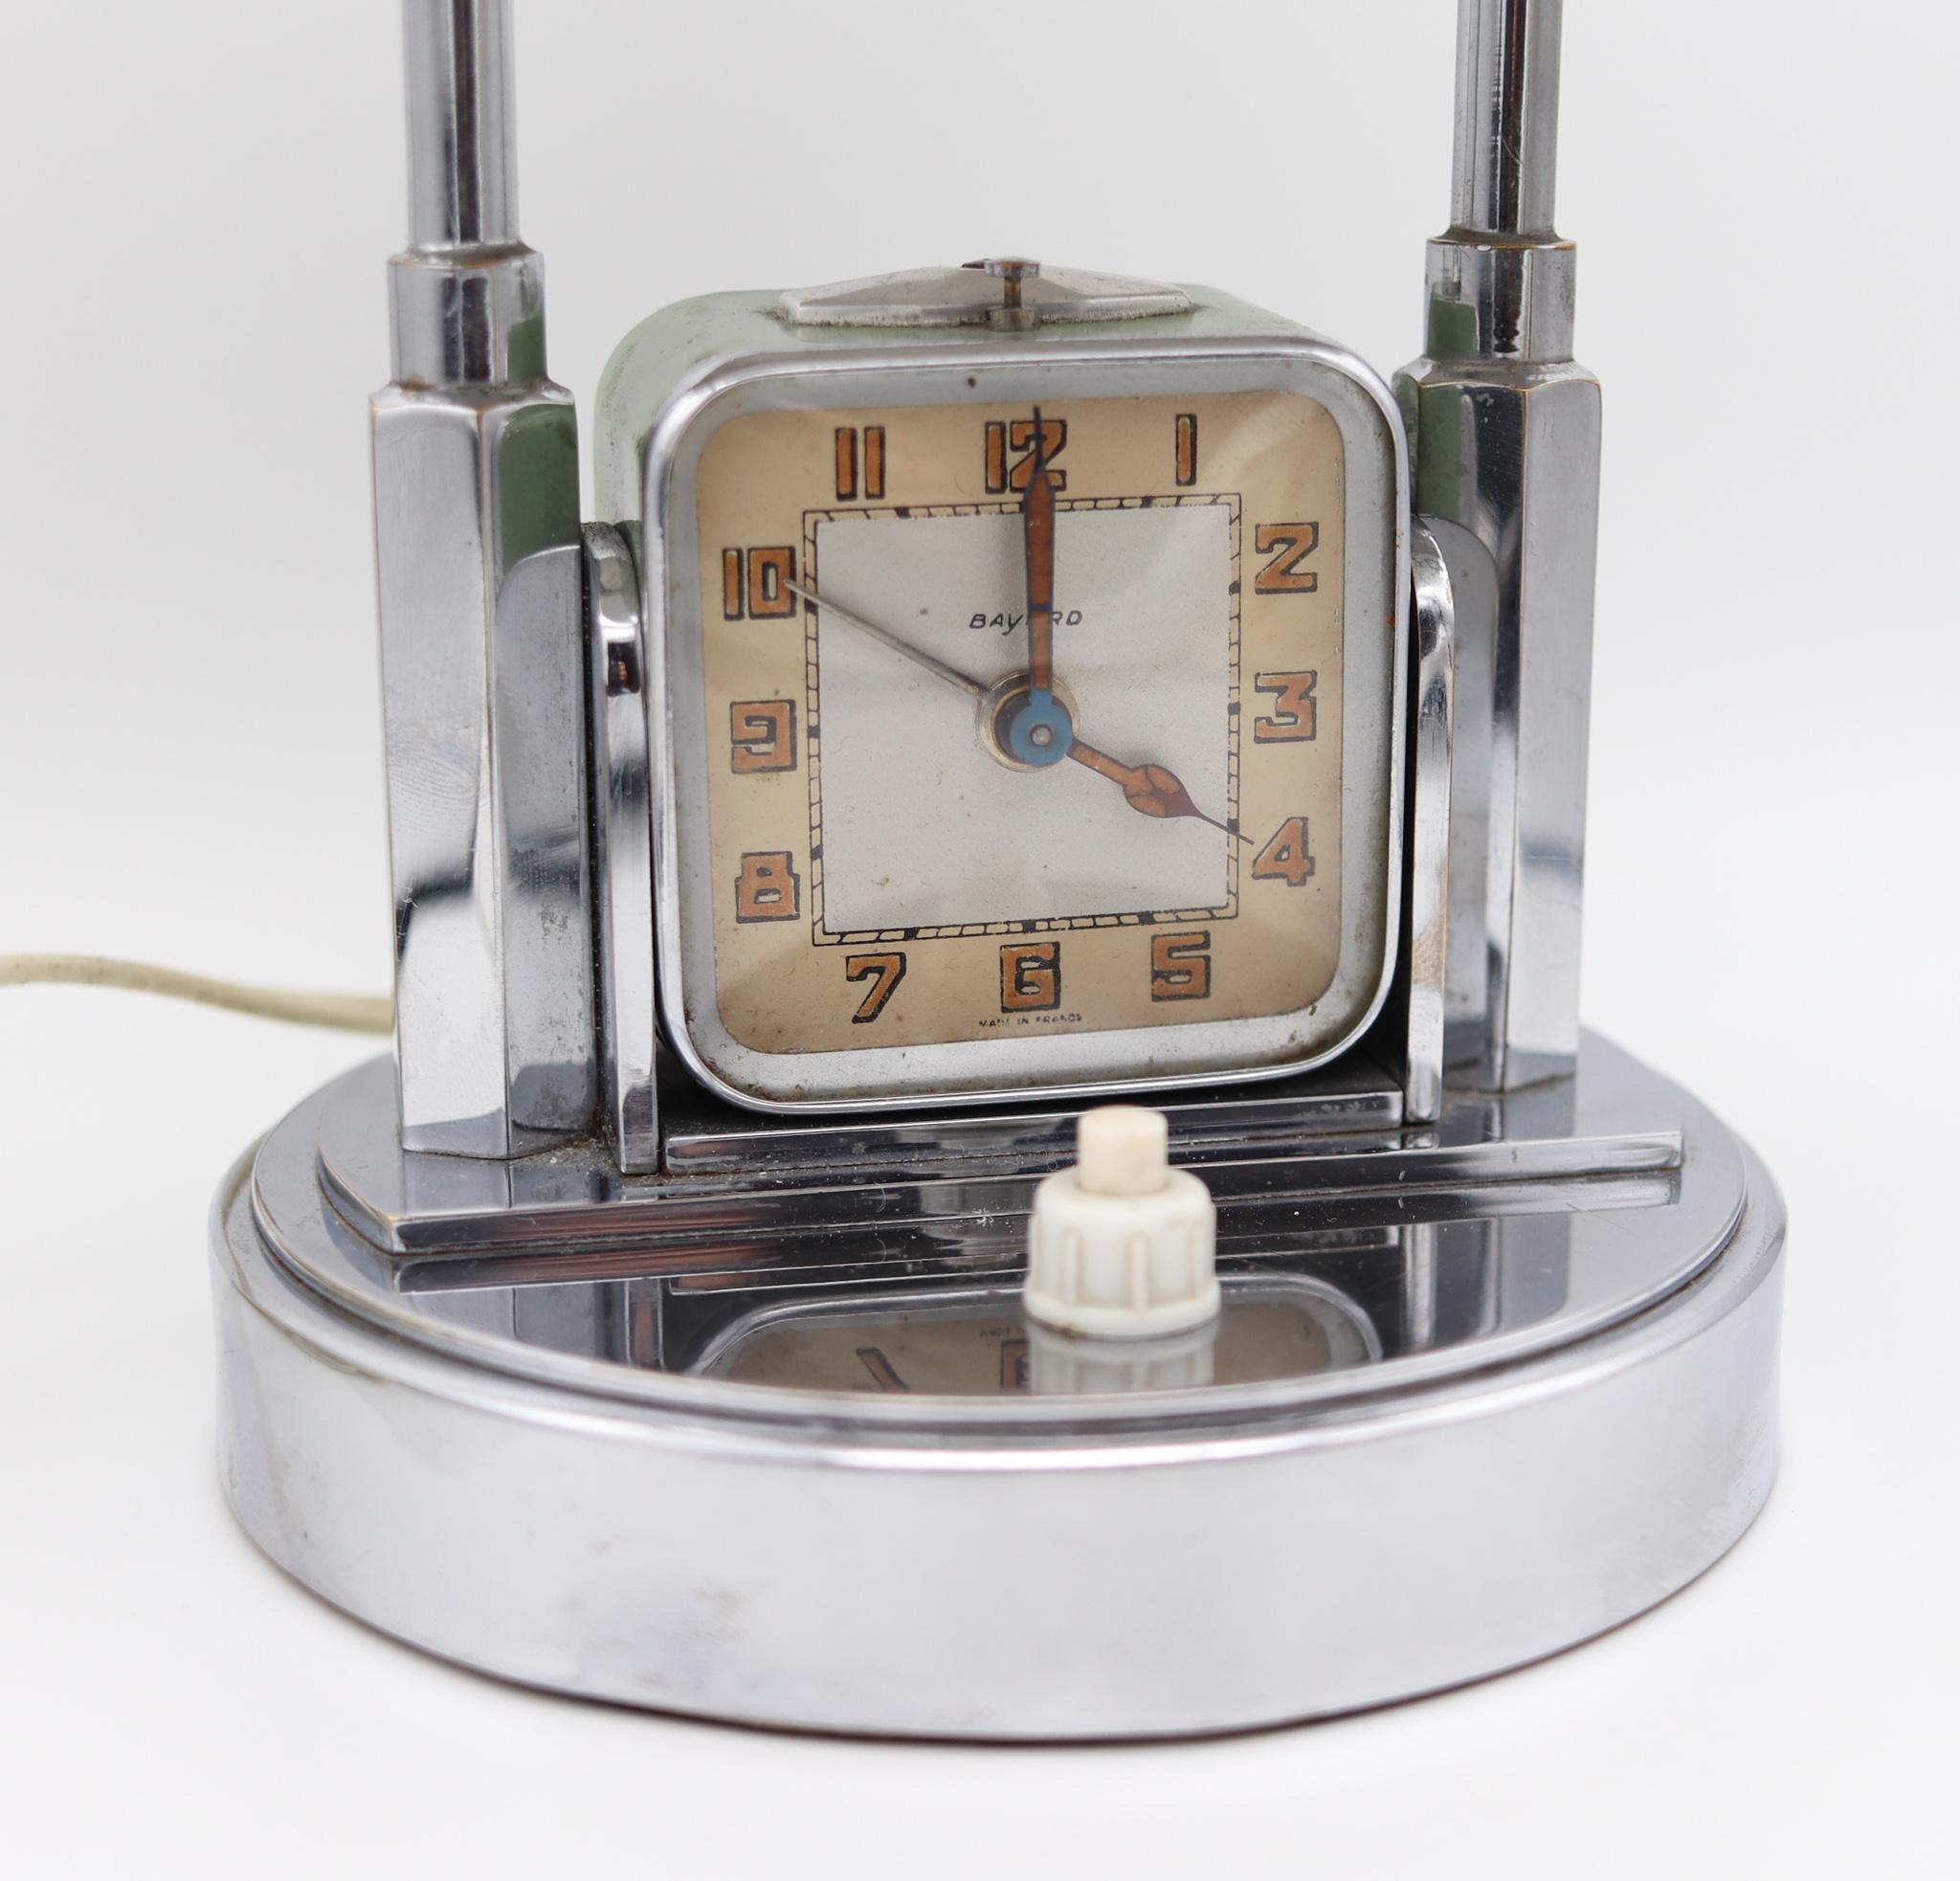 Eine Uhr für eine Schreibtischlampe, entworfen von Bayard France.

Fabelhafte und sehr schöne integrierte Schreibtischlampe-Uhr, die in Paris Frankreich von der Firma Bayard während der Art-Deco-Periode in den 1930er Jahren hergestellt wurde.